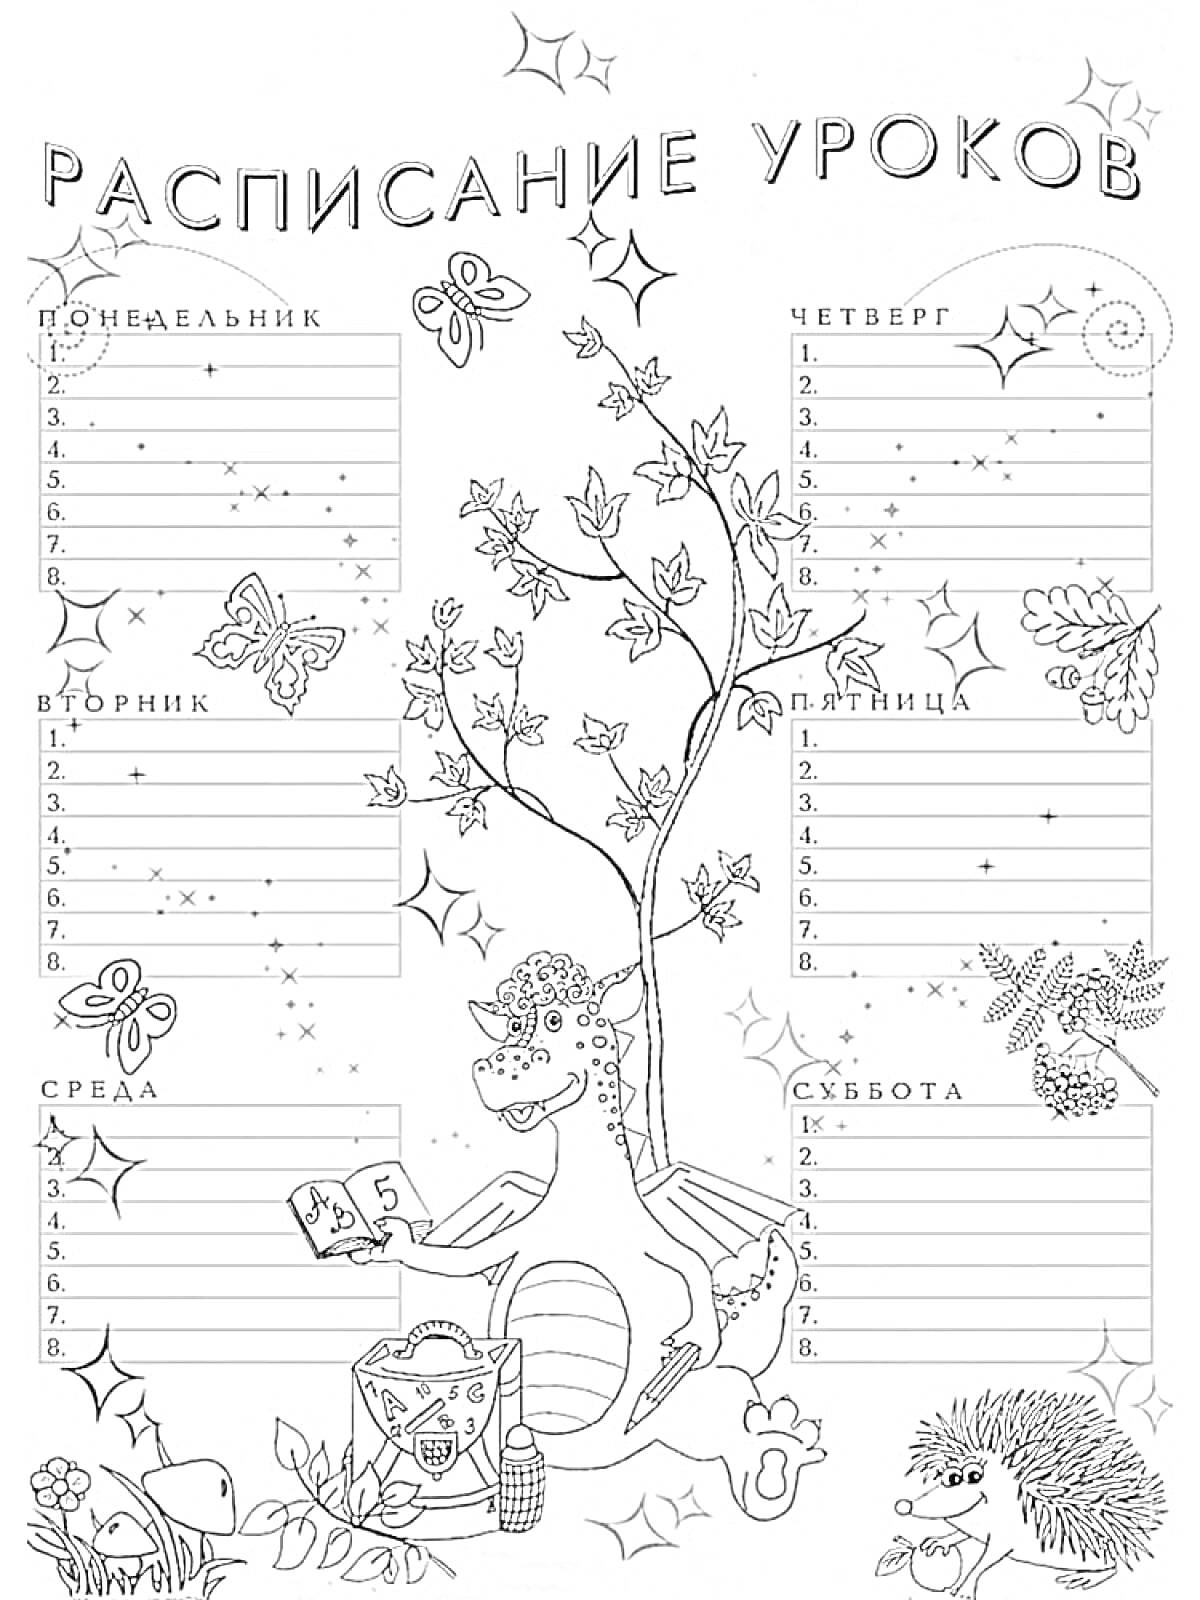  Расписание уроков с динозавром, ёжиком, бабочками и деревом